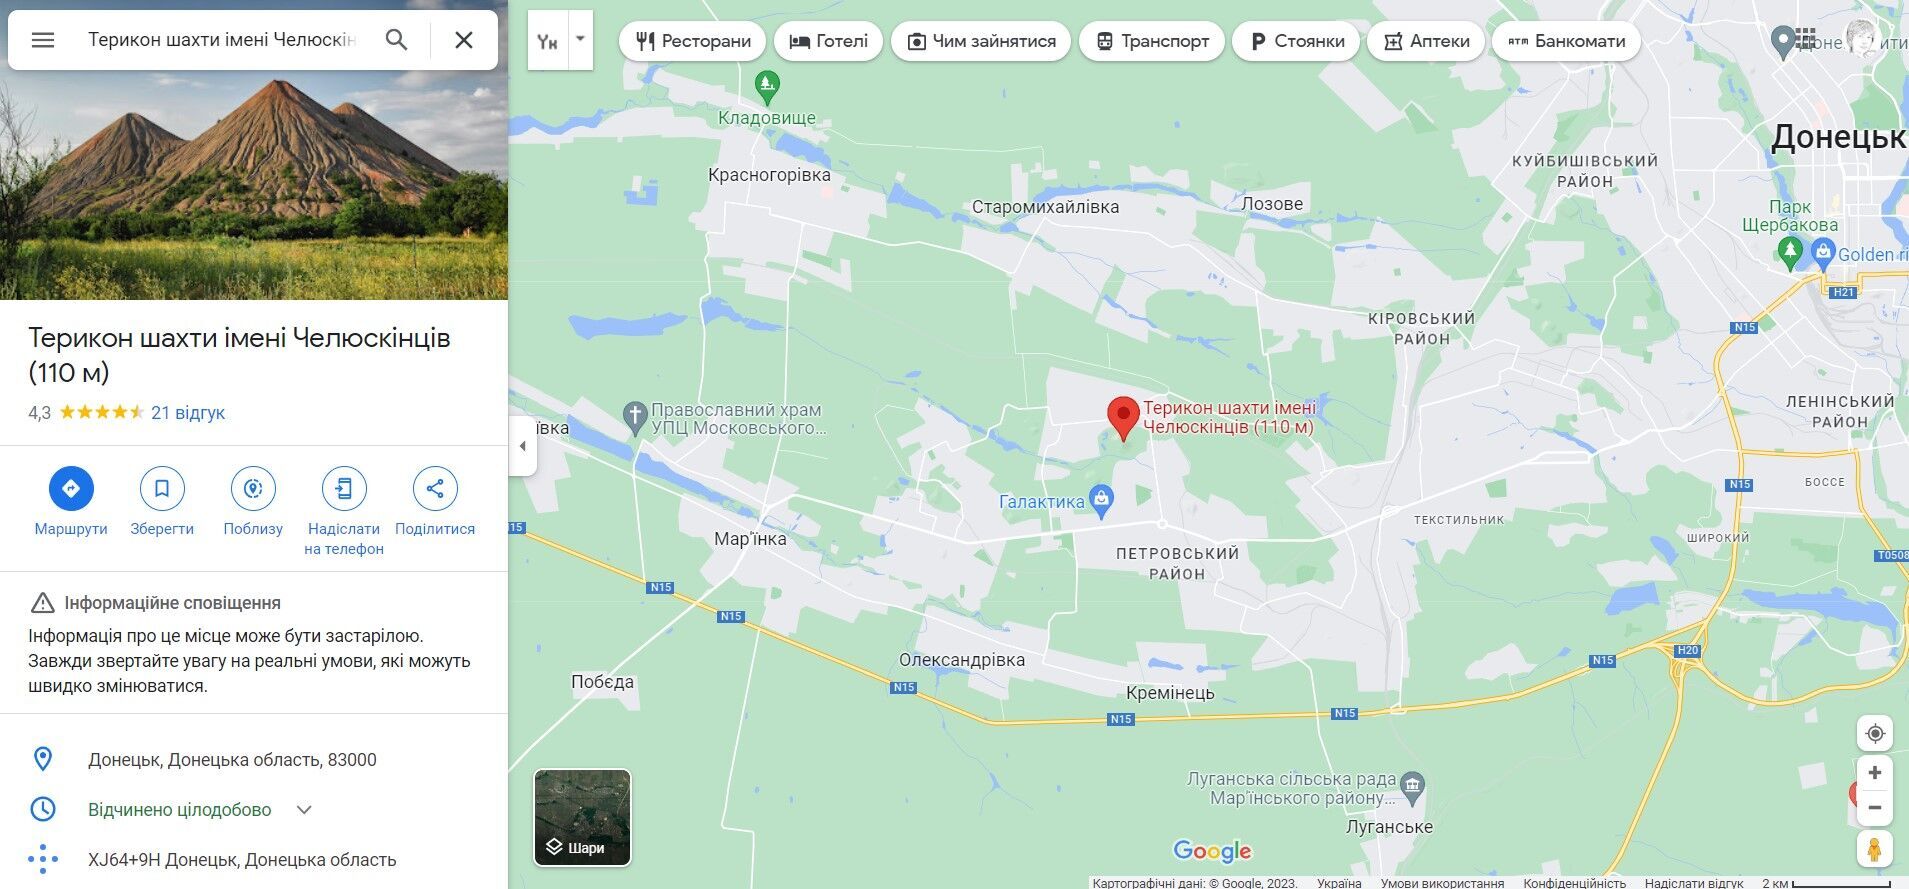 Местность на окраине Донецка, где, вероятно, взорвался склад БК армии рф